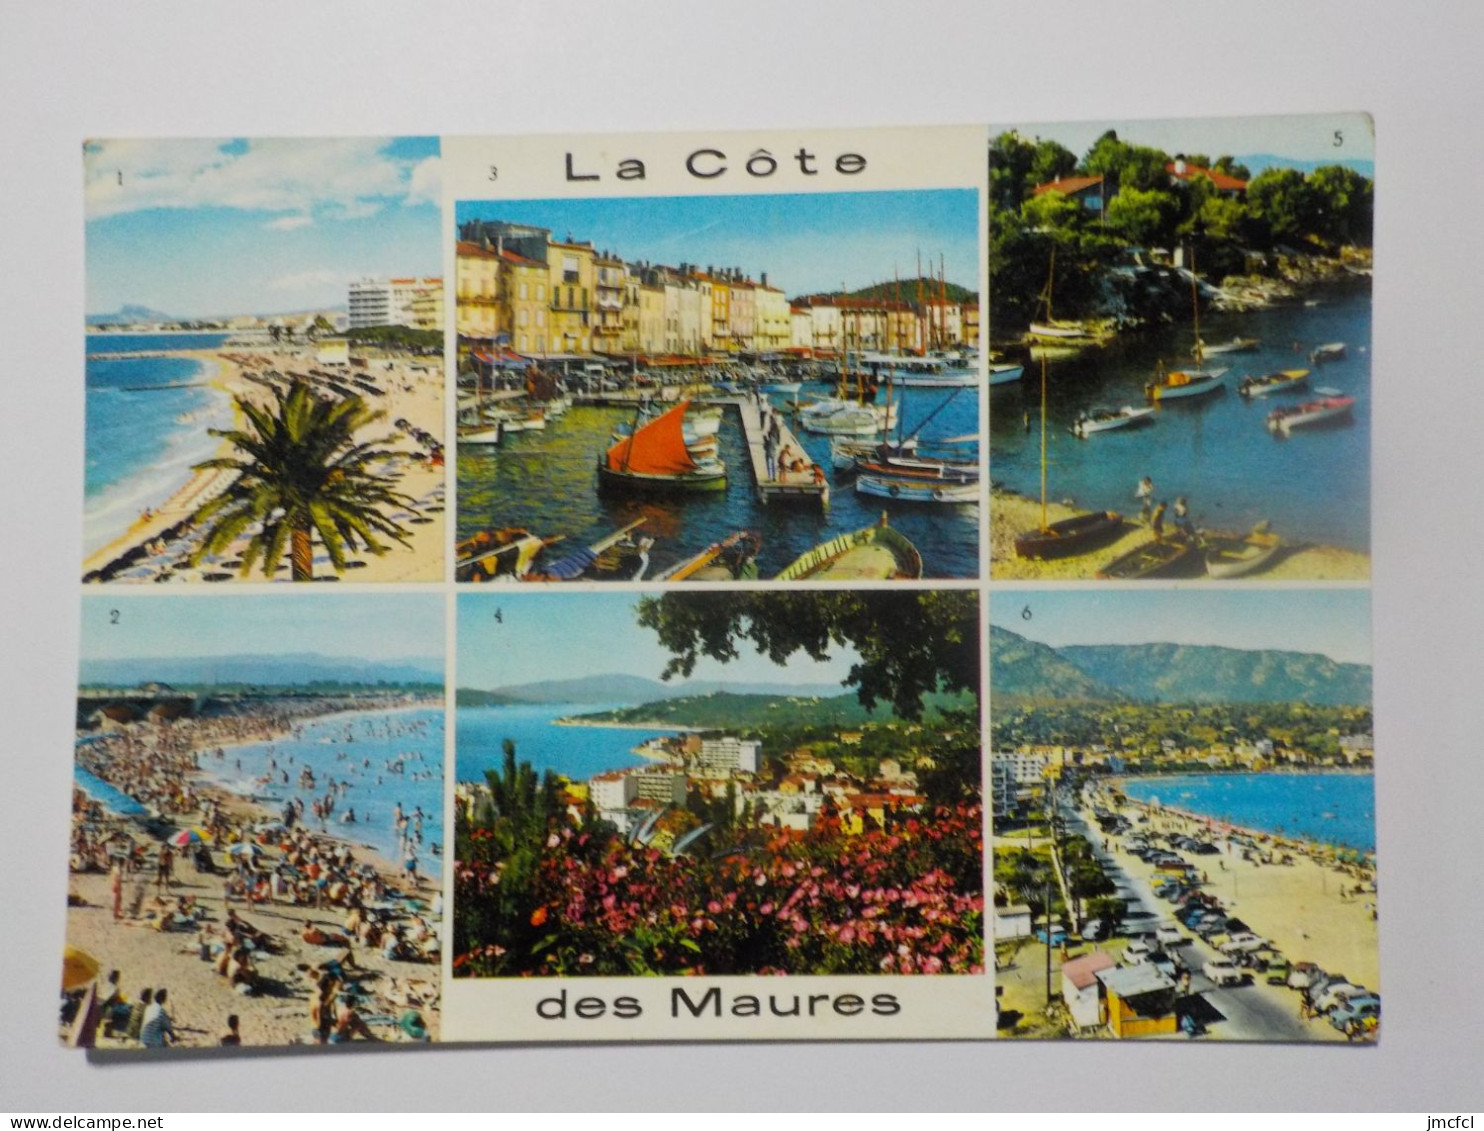 LA MEDITERRANEE (Dept 06-83-13-Cote d'Azur) 54 Cartes a 0.20 euros l'une